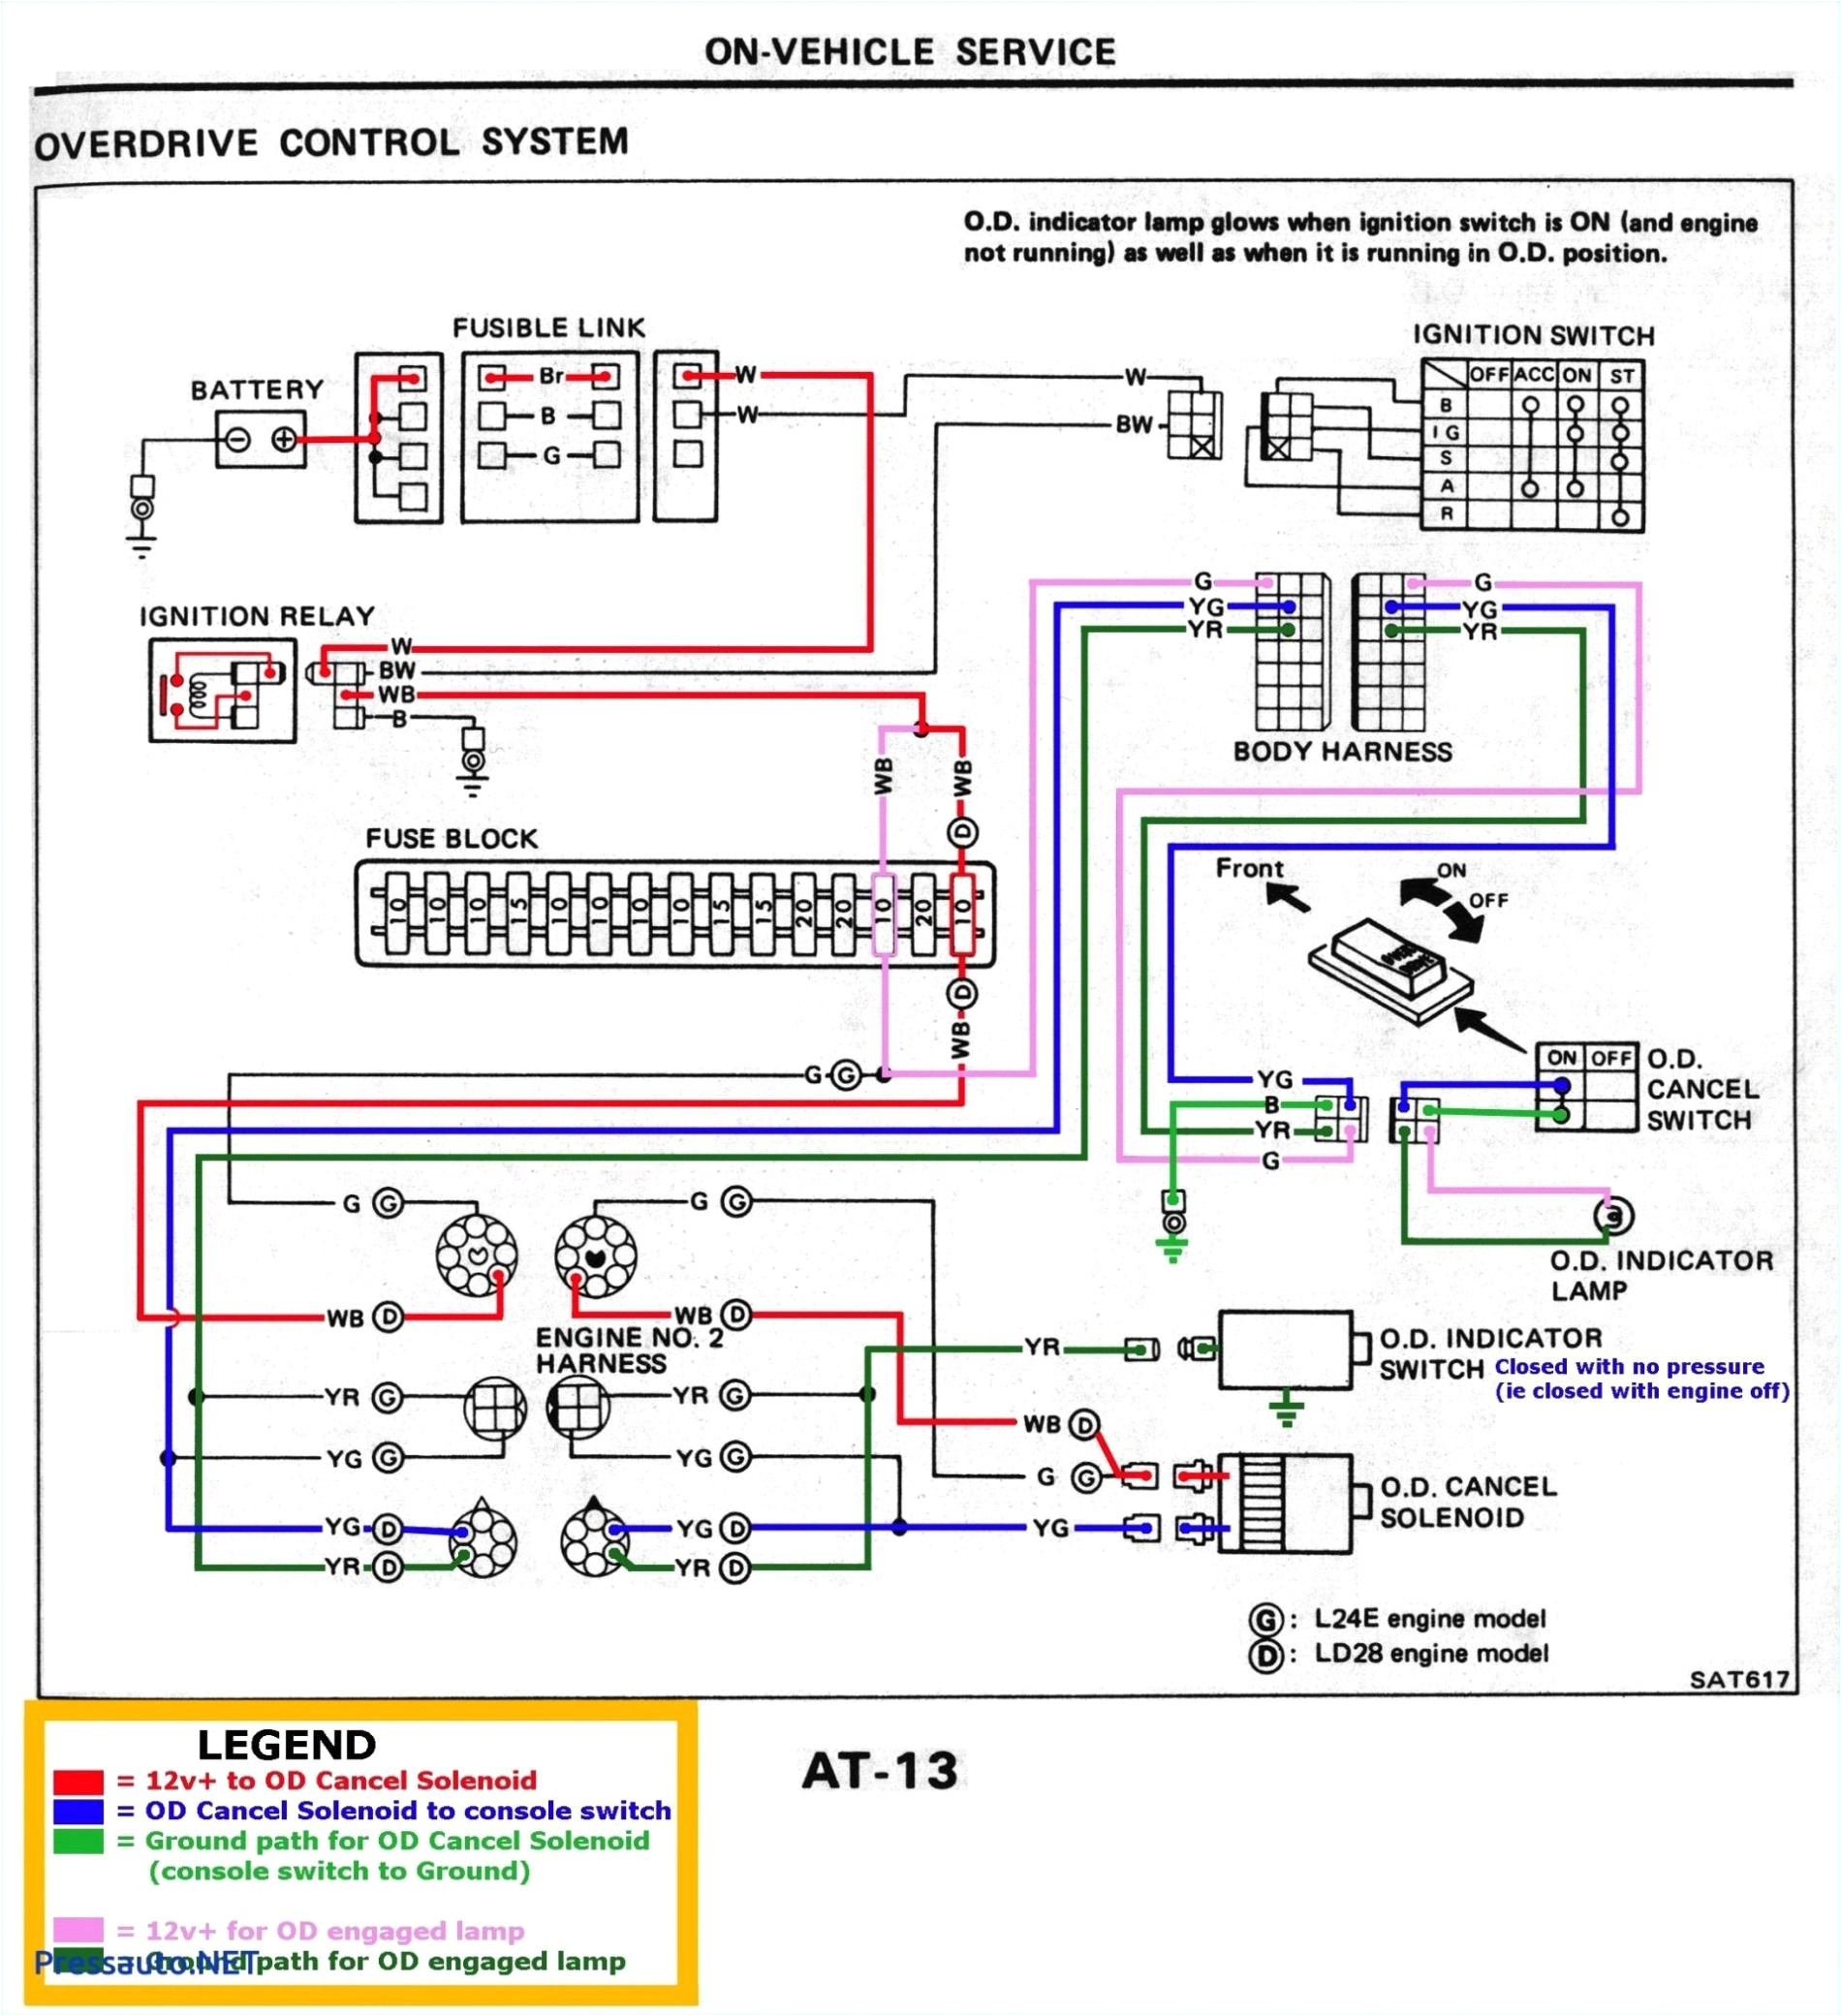 bailey caravan electrics wiring diagram unique wiring diagram for 13bailey caravan electrics wiring diagram unique wiring